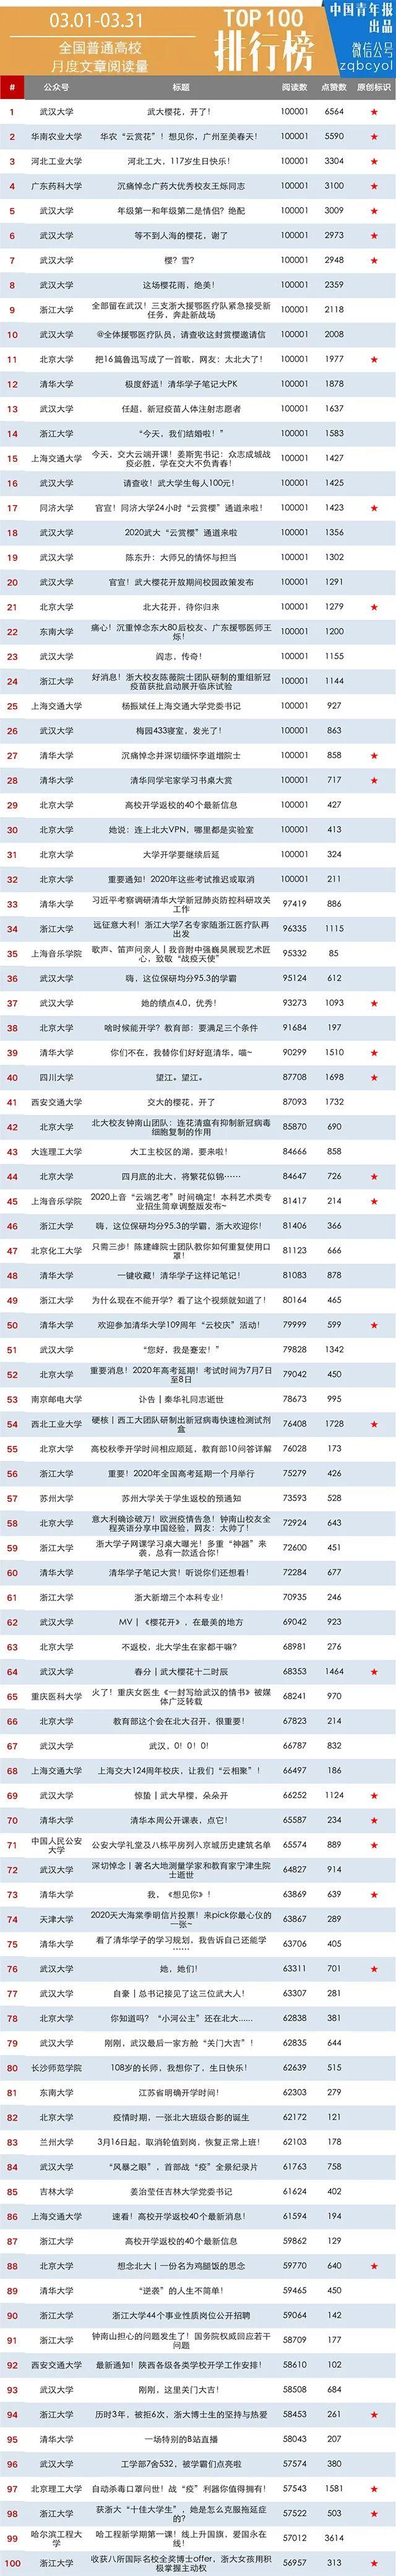 月榜 | 中国大学官微百强（2020年3月普通高校公号）